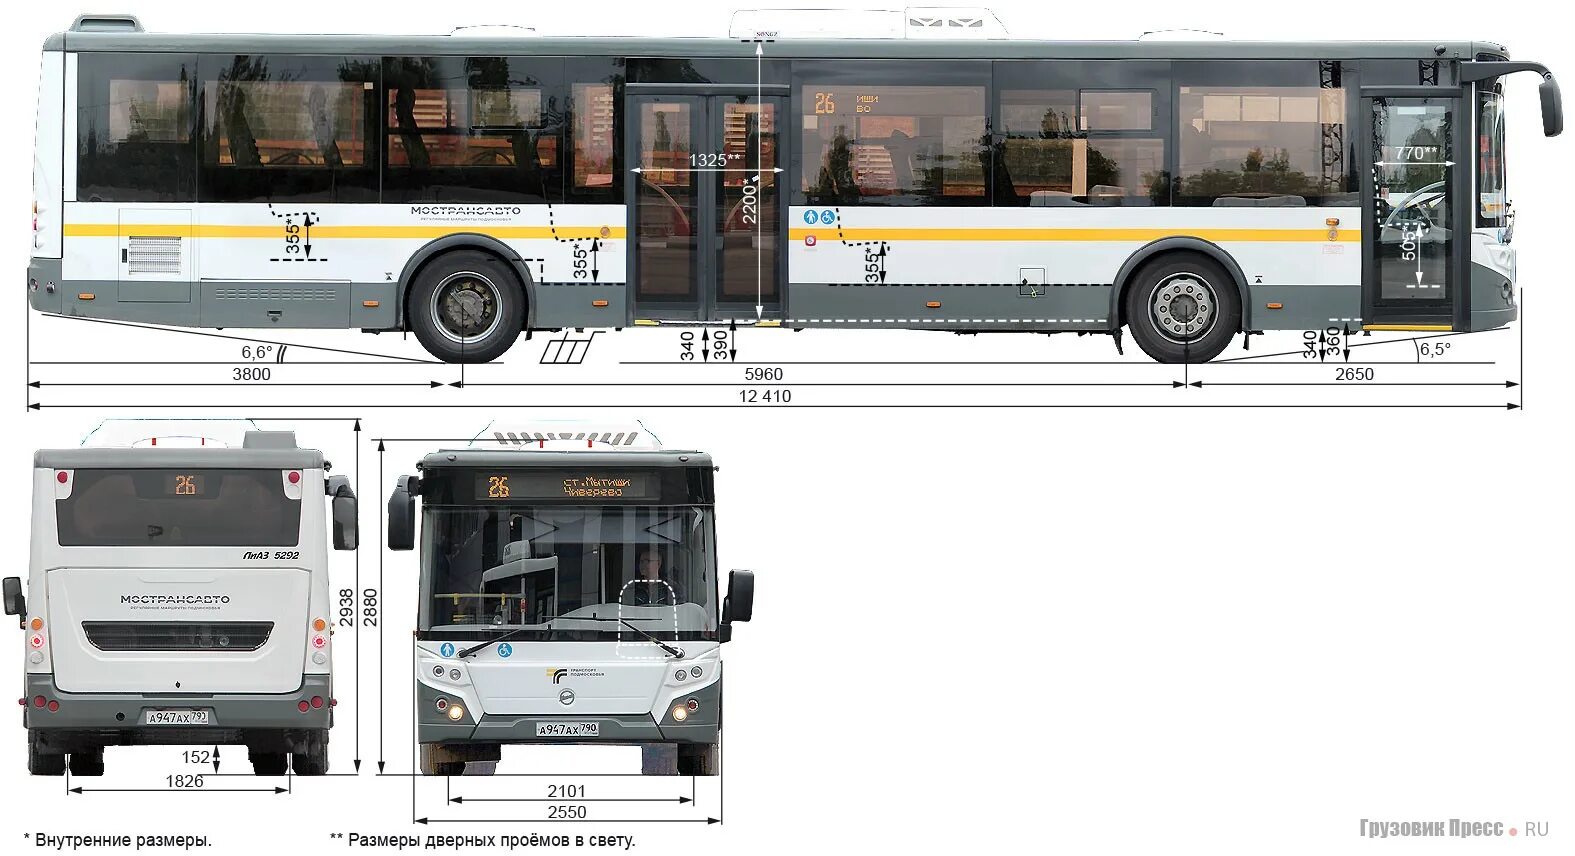 Какая длина автобуса. Длина автобуса ЛИАЗ 5292. Габариты автобуса ЛИАЗ 5292. Ширина автобуса ЛИАЗ 5292. Габариты ЛИАЗ 529265-03.